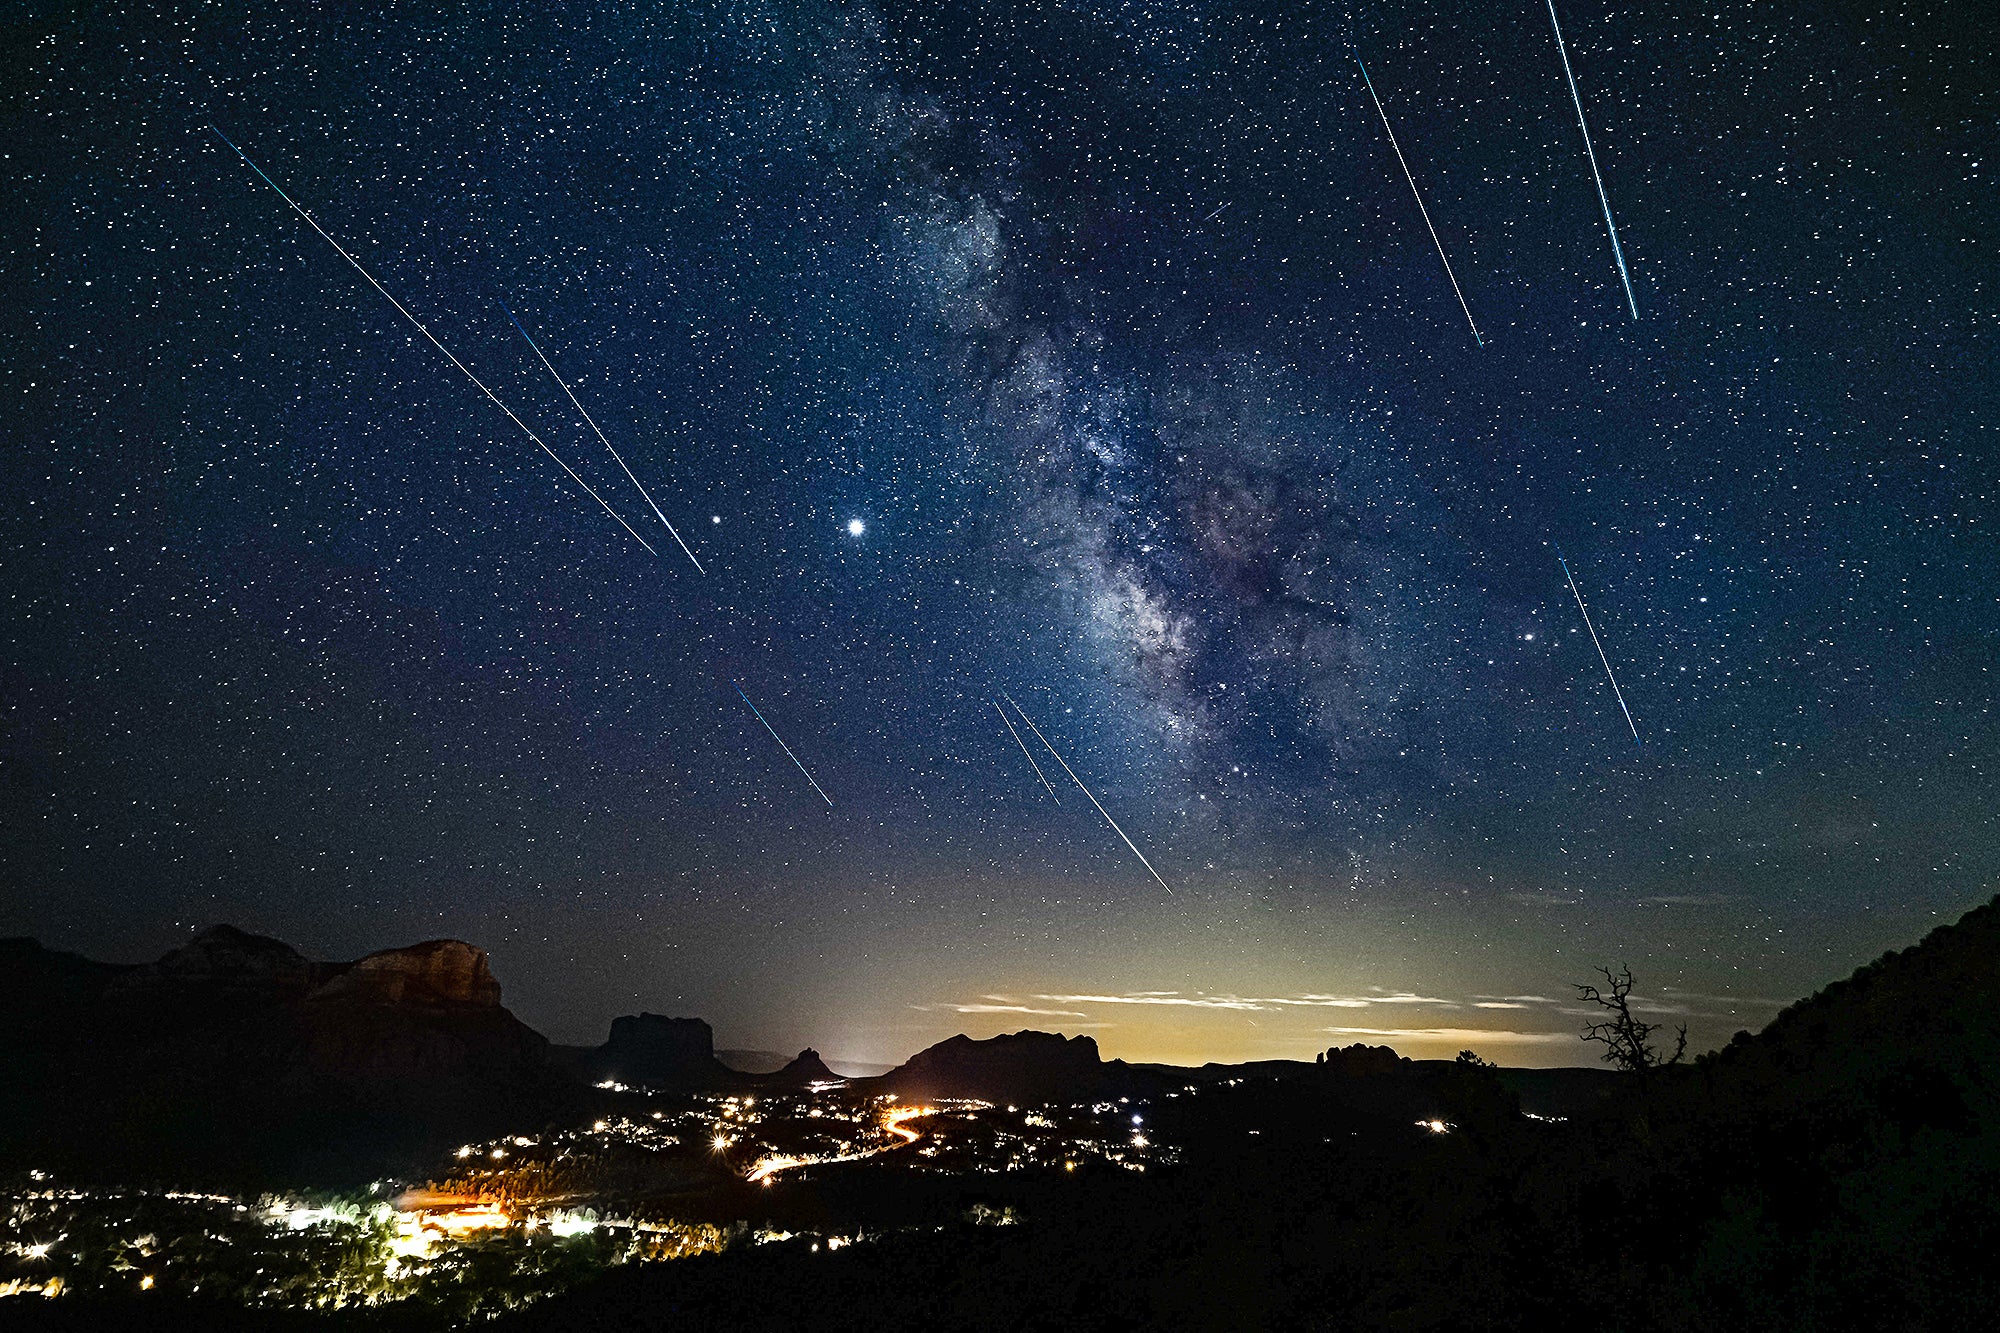 Perseid Meteor Shower Peaks This Weekend in a Stargazing MustSee